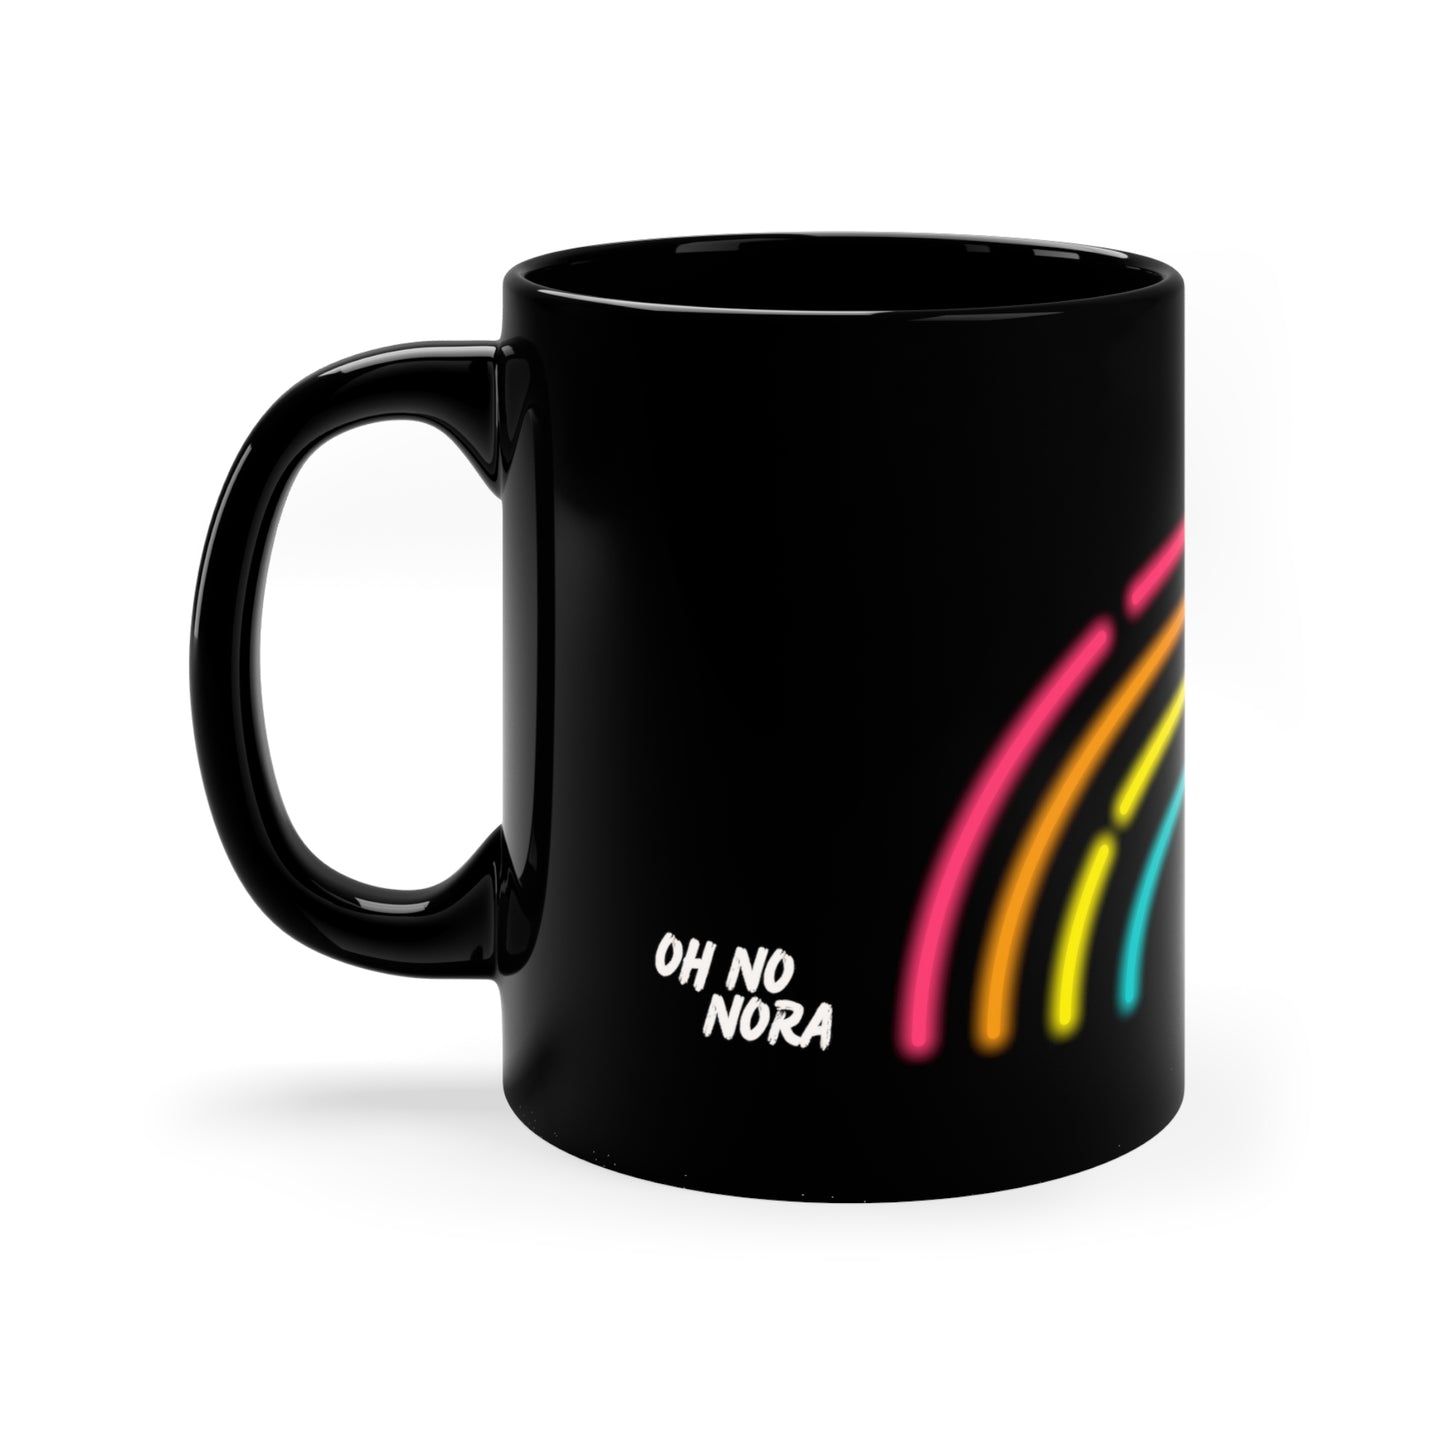 The GAY! coffee mug